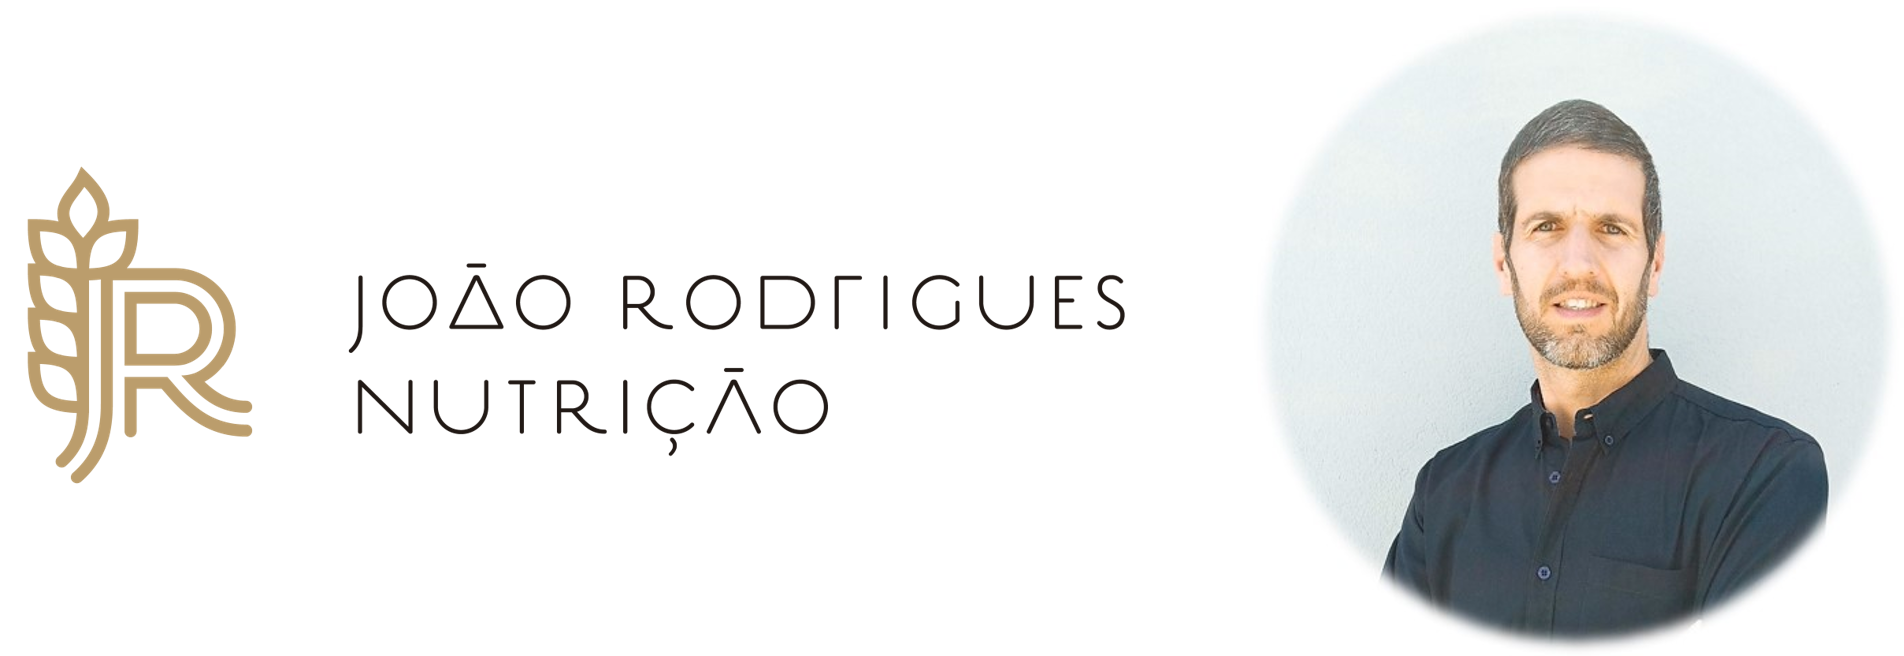 João Rodrigues - Nutrição